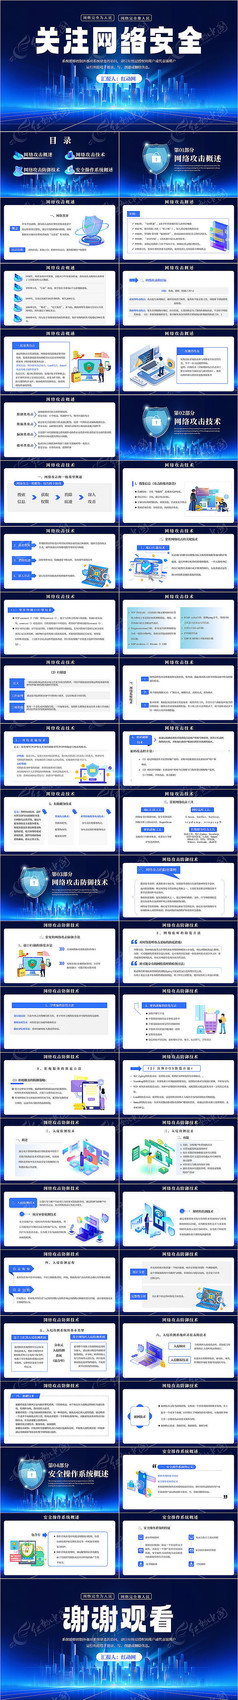 蓝色科技网络安全技术介绍PPT模板